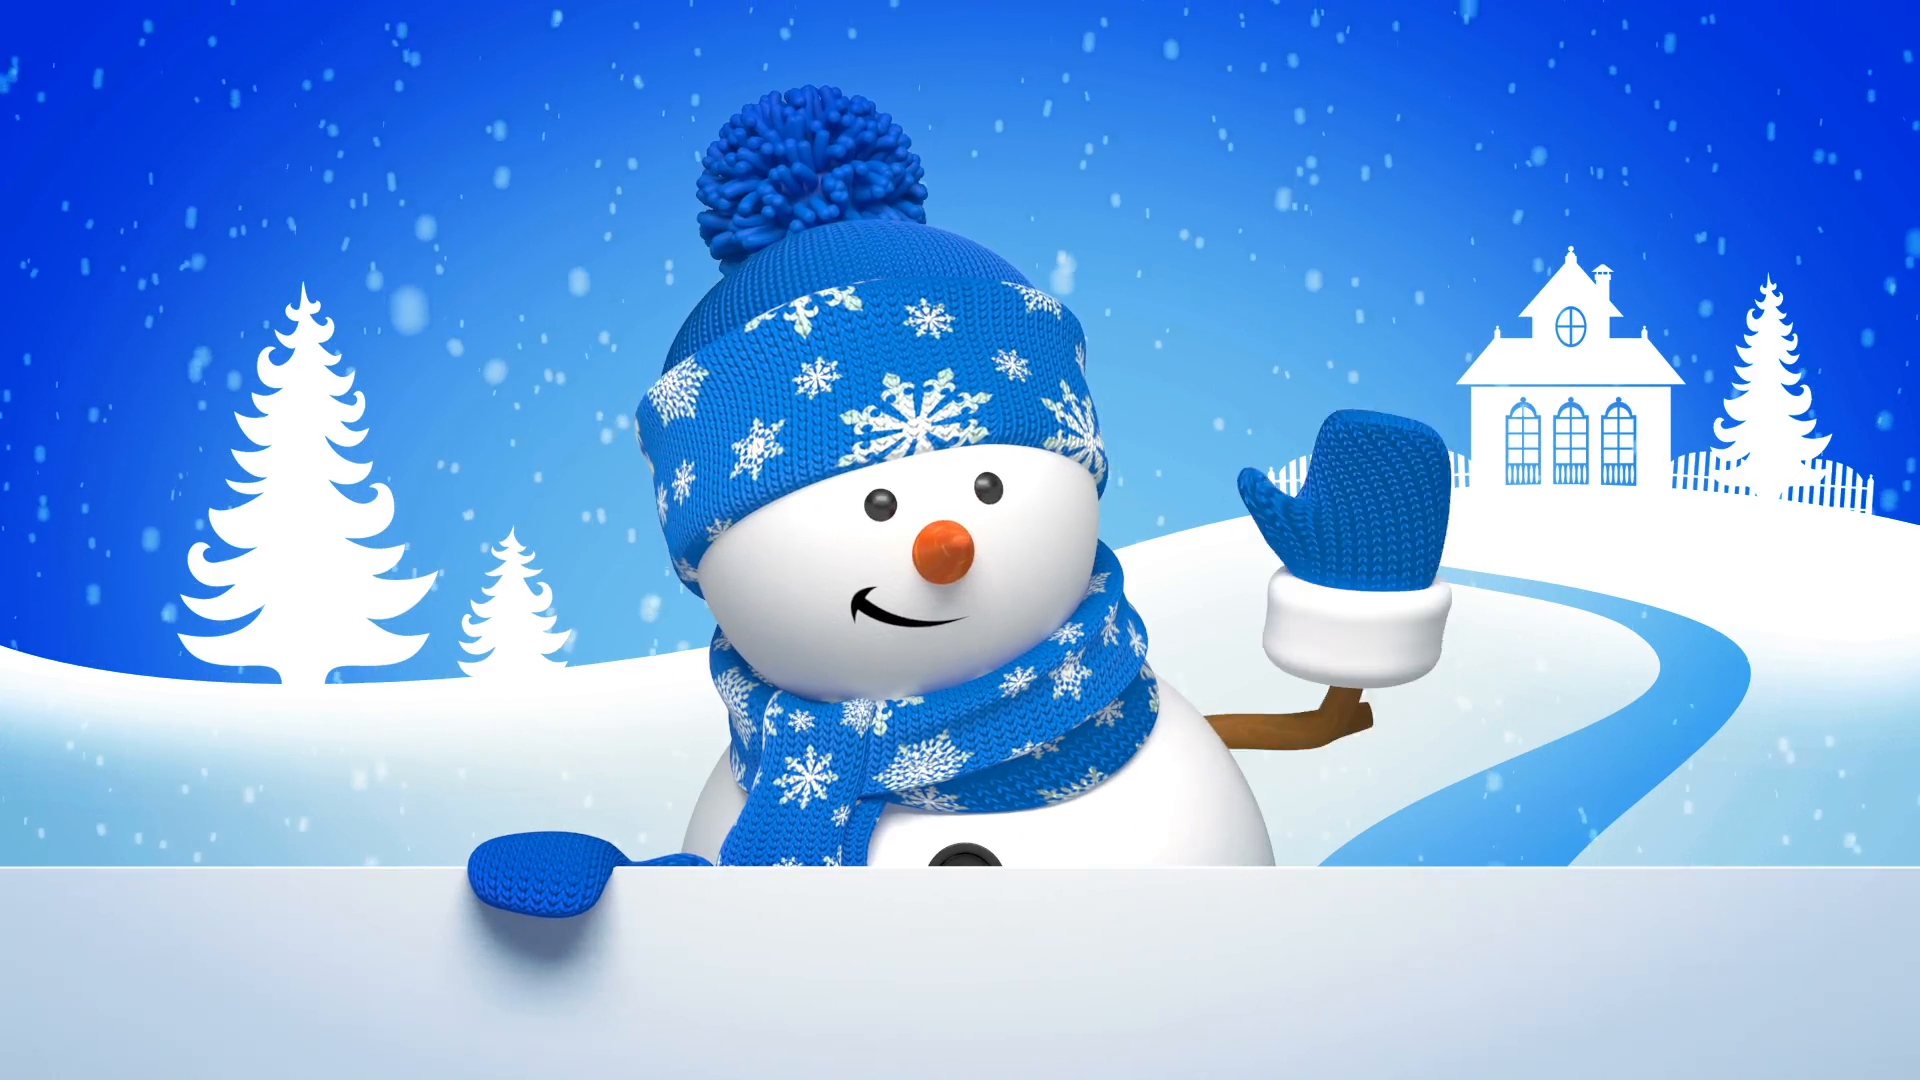 雪だるまの壁紙のhd,雪だるま,雪,冬,空,クリスマス・イブ